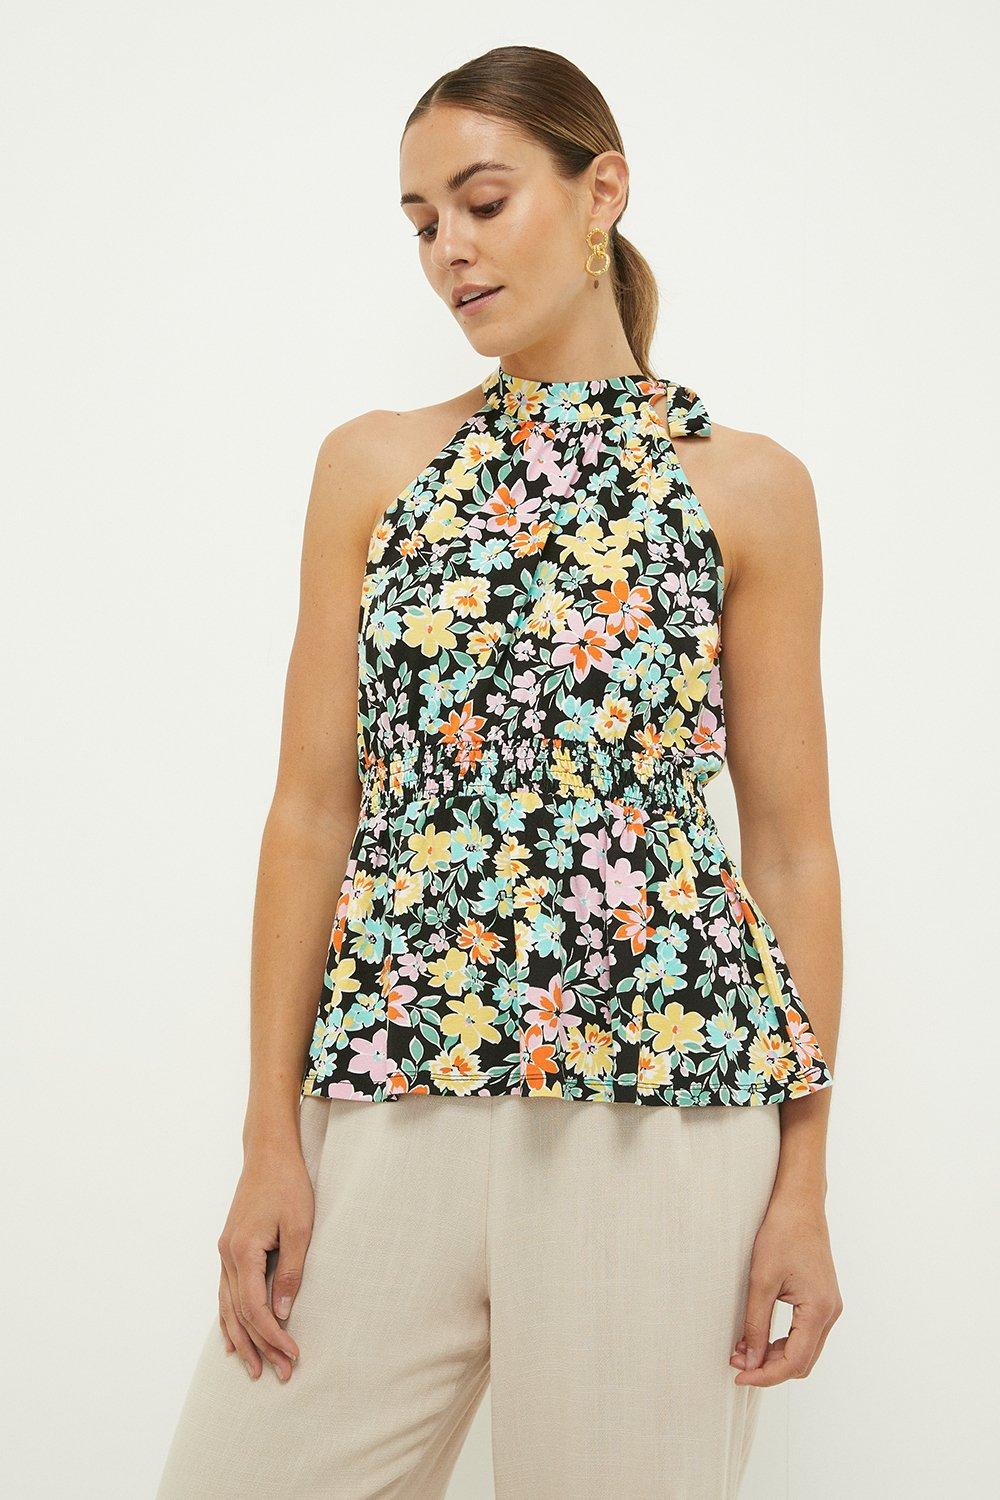 Women’s Shirred Waist Halter Top - floral - XL